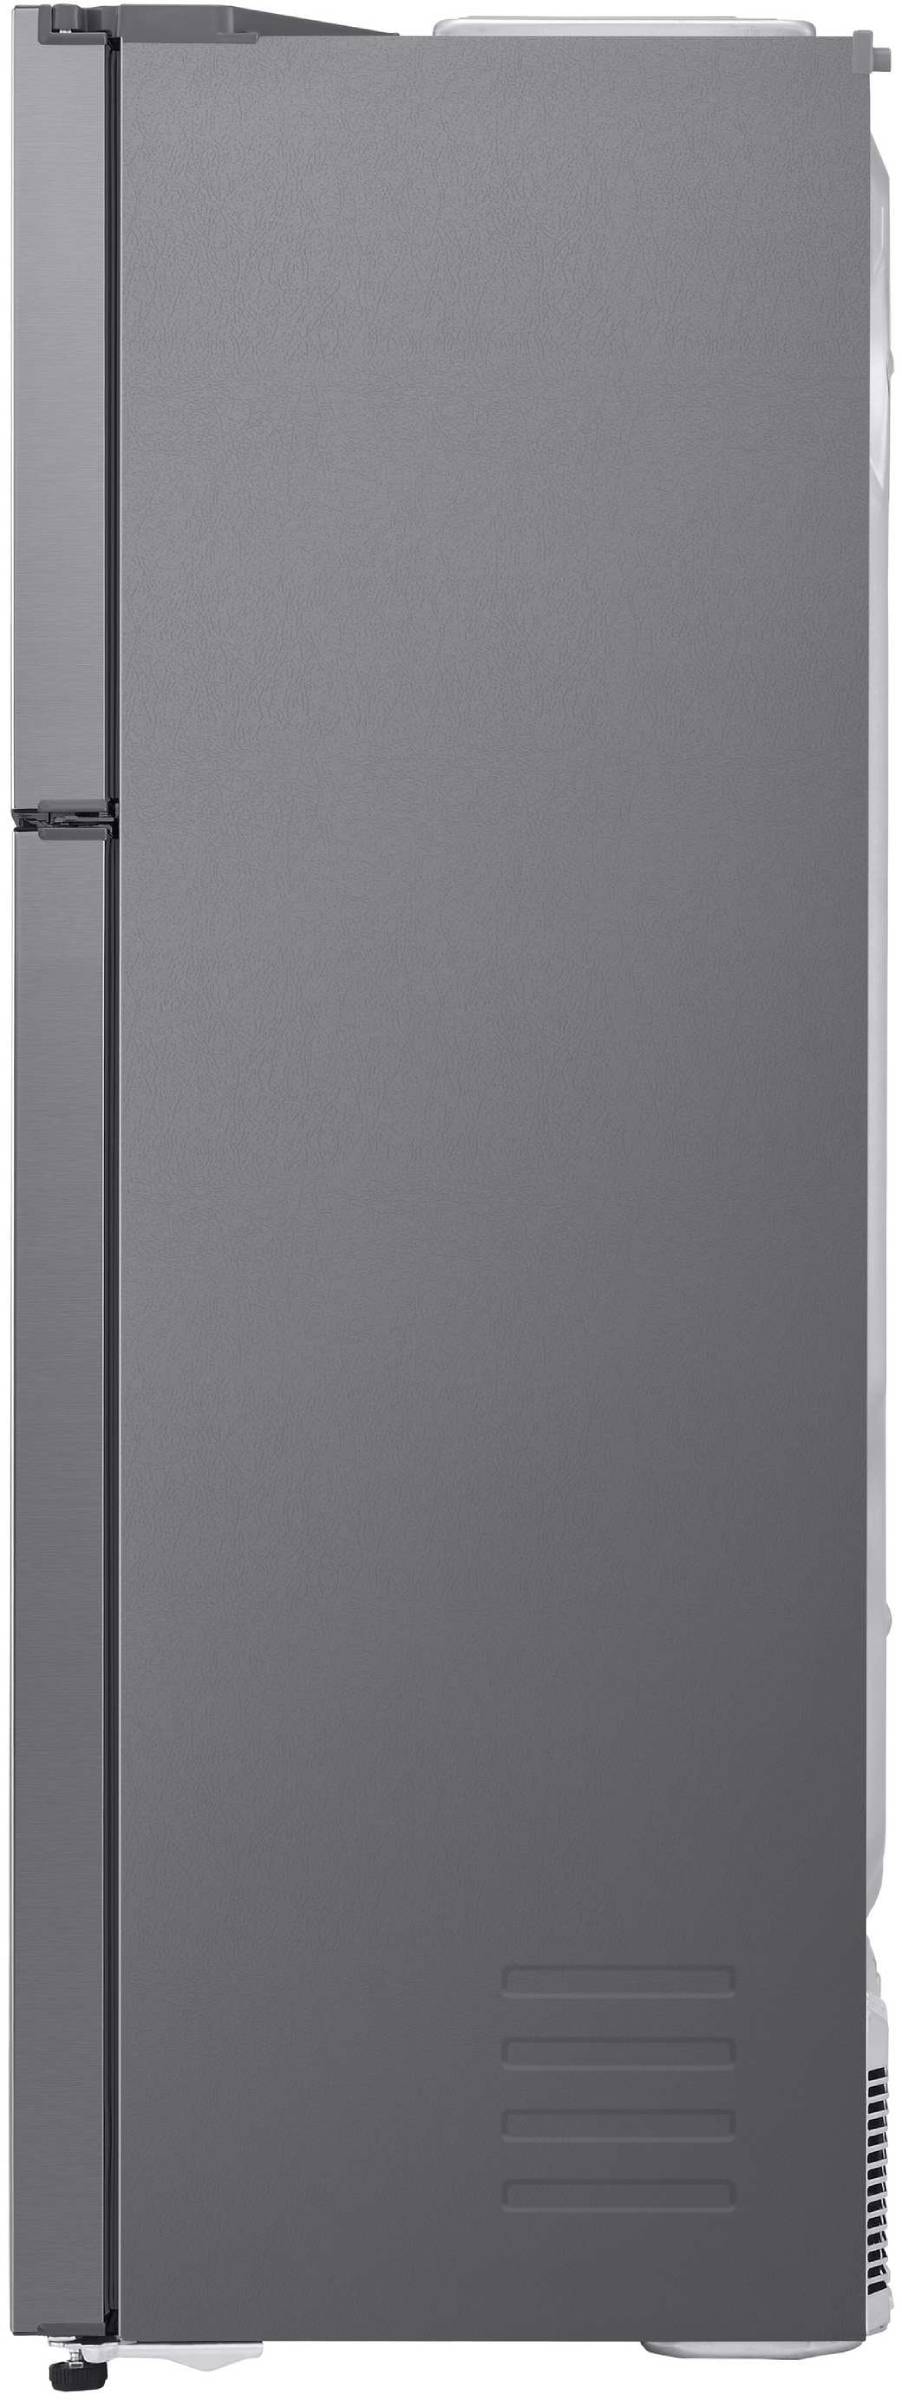 LG Réfrigérateur congélateur haut  - GTF8659PS1